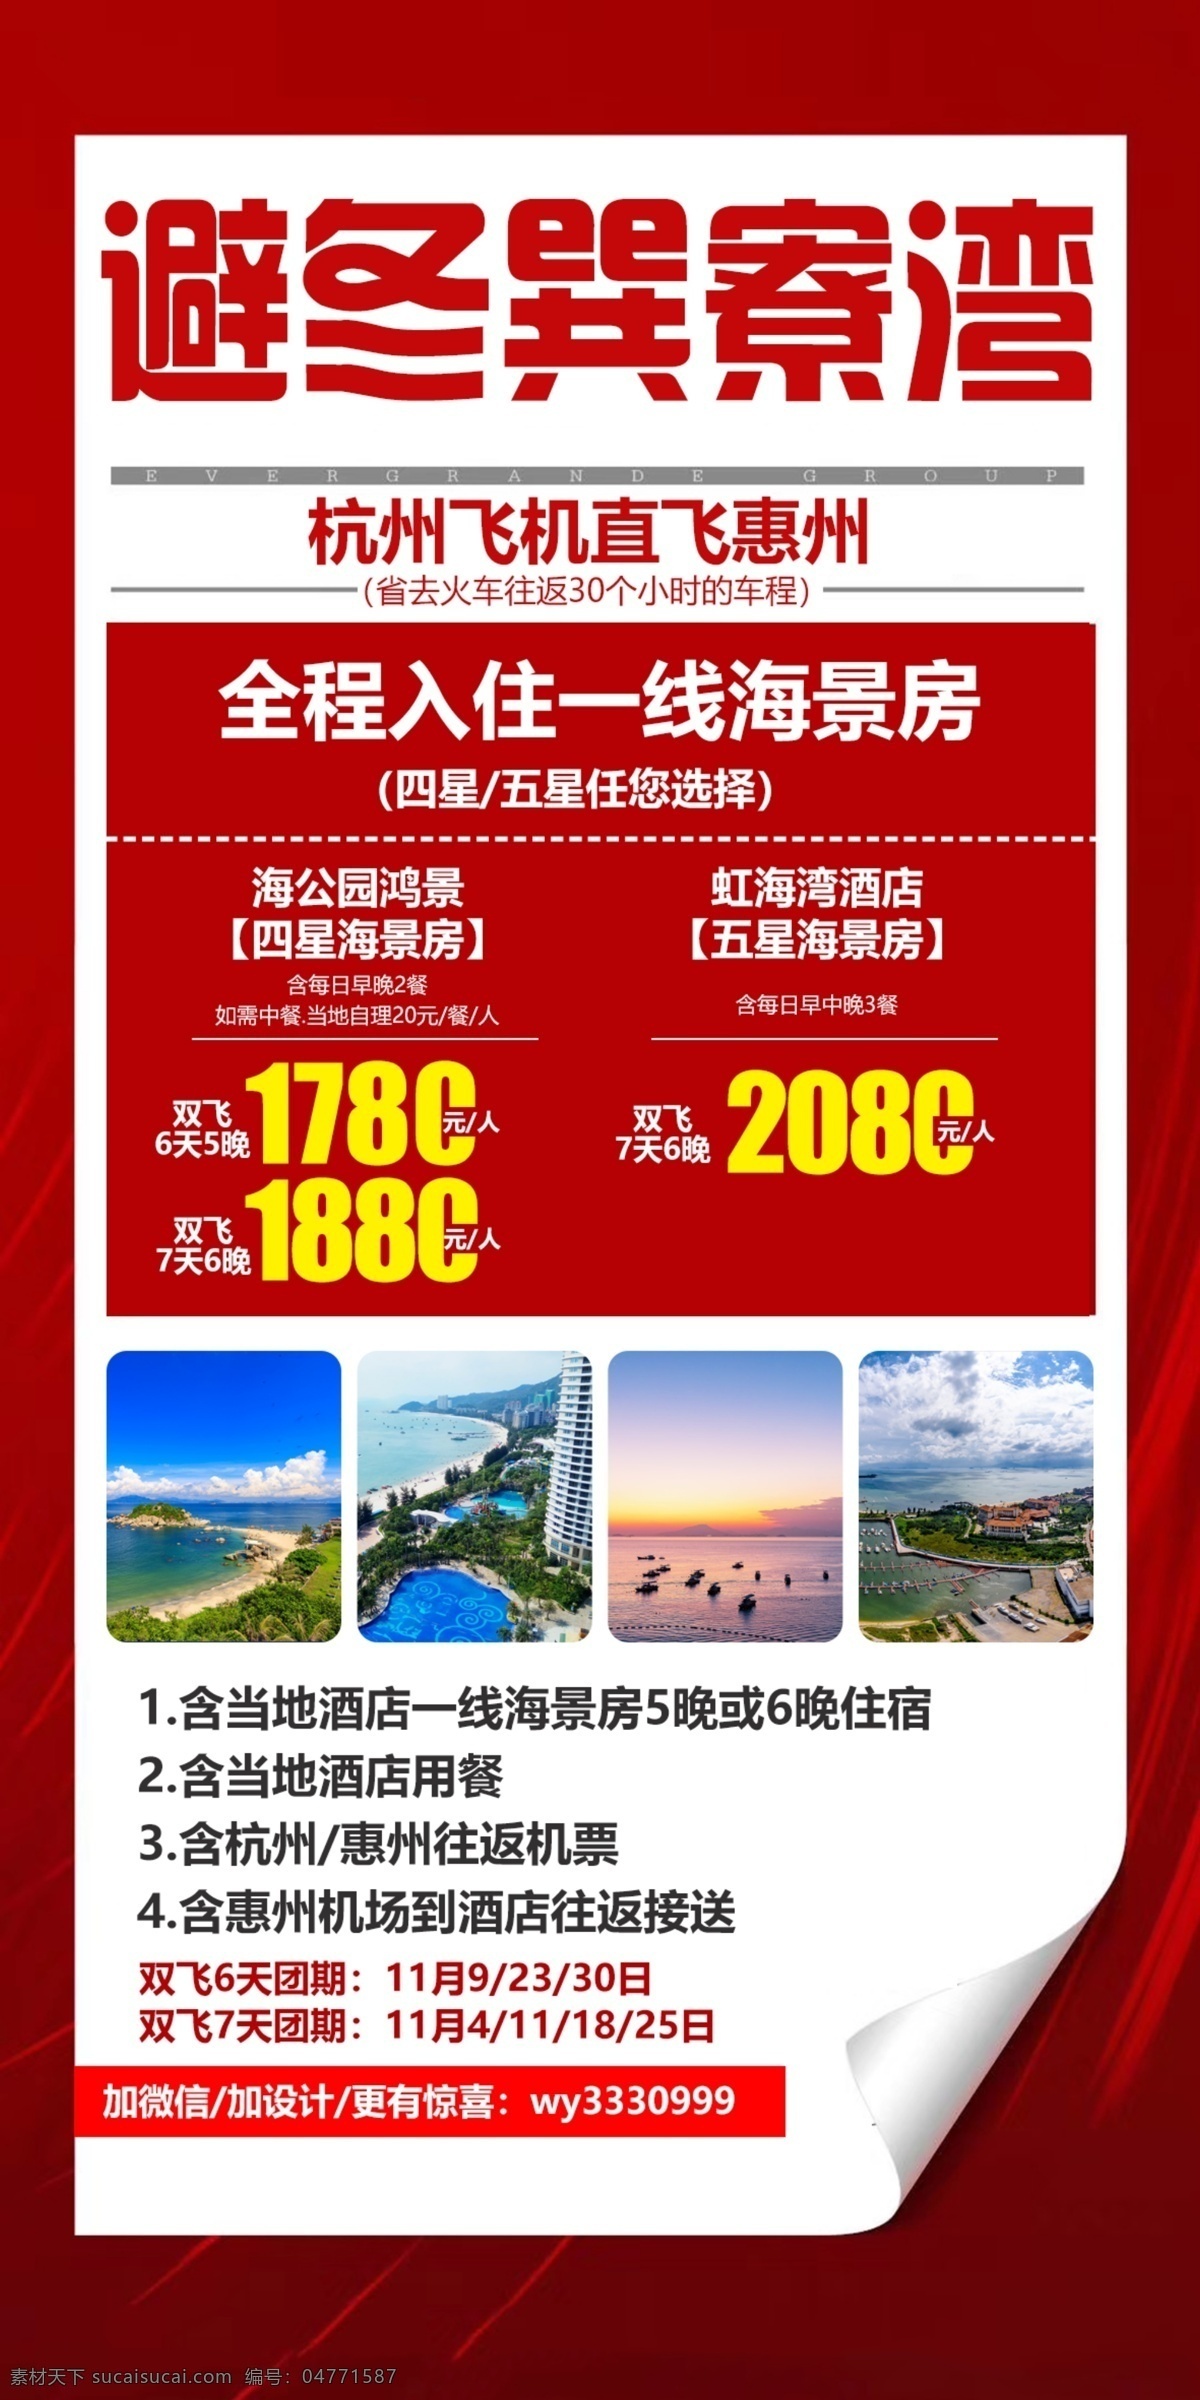 特价海报 特价优惠旅游 海南图片 海南 桂林 东北 国内特价 旅游海报 wx15166777922